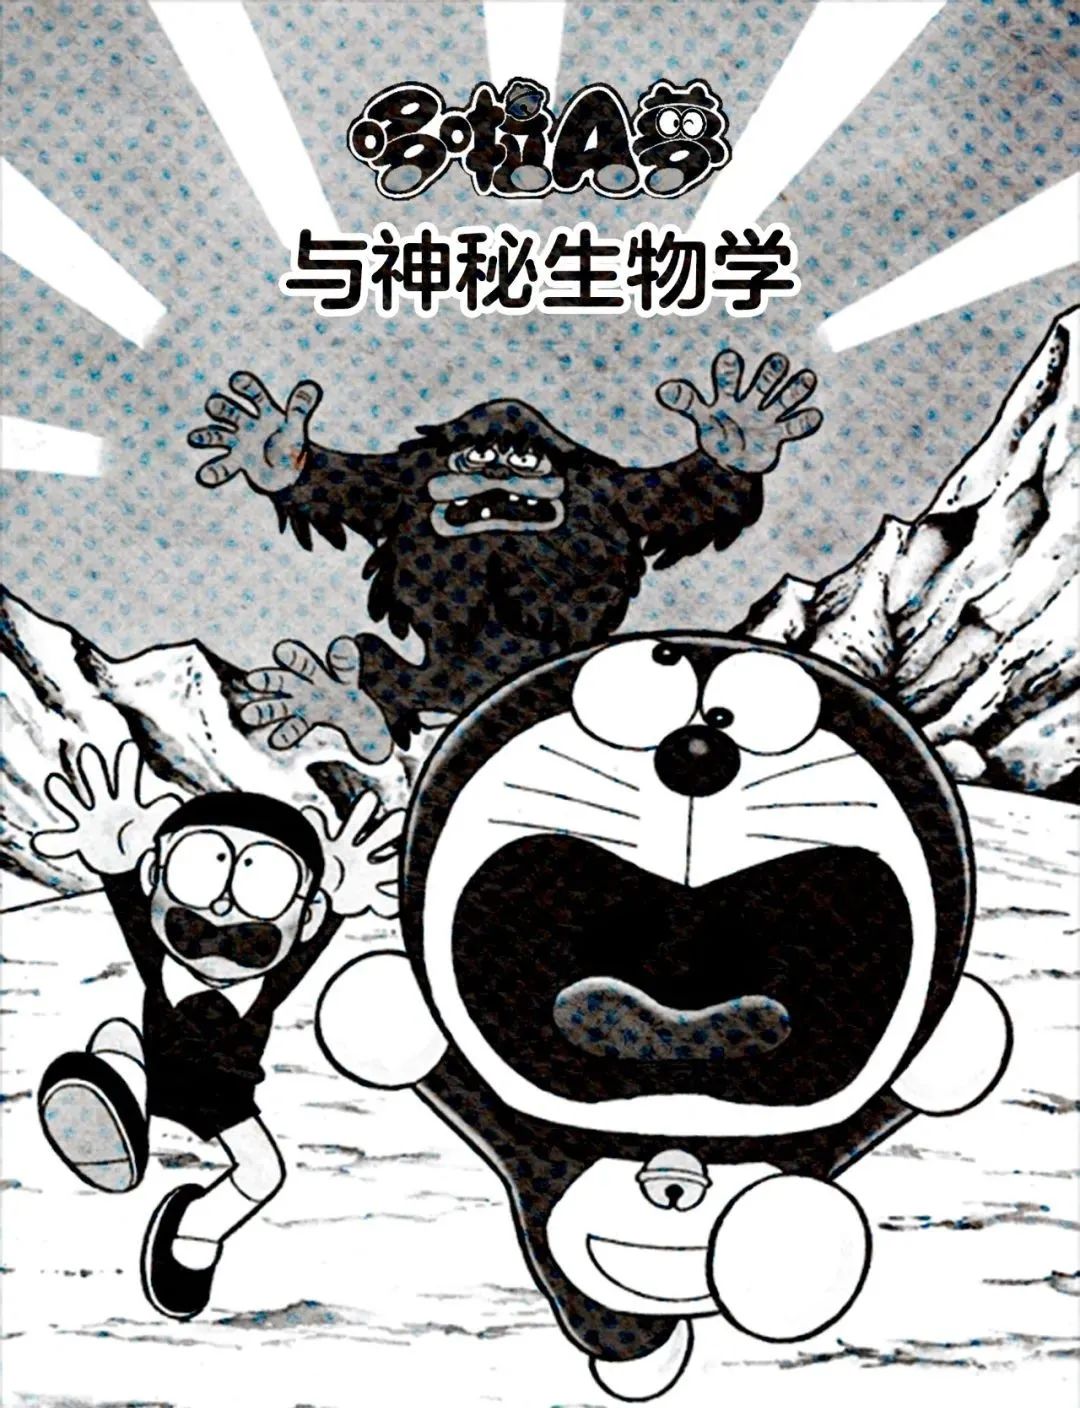 水怪 雪男 隐藏在哆啦a梦中的神秘生物学 日本通微信公众号文章